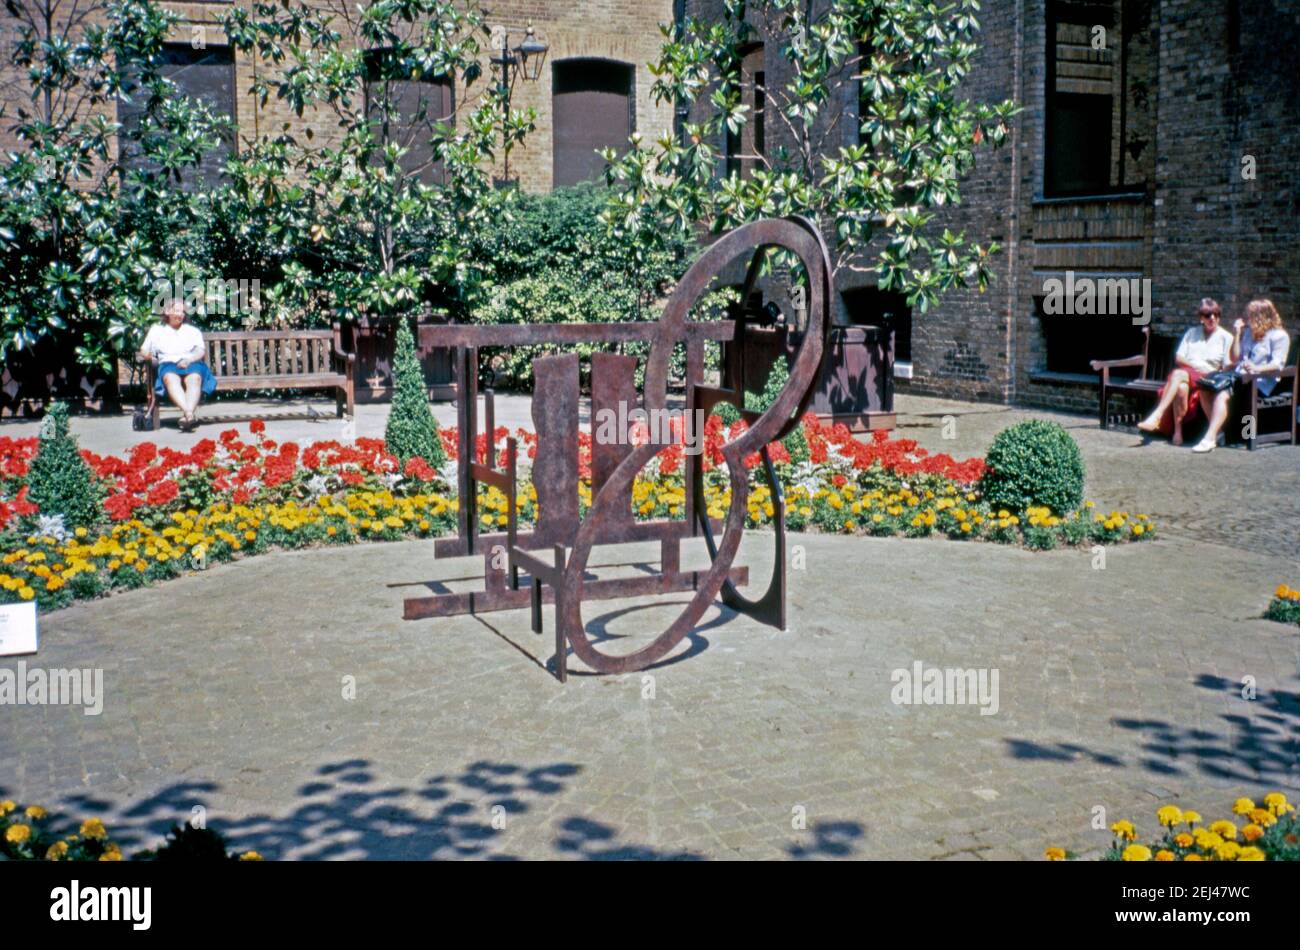 Eine Stahlskulptur von 1989, Nigel Halls ‘Clerestory’, in der City of London, England, UK 1993. Dies war Teil der ‘Art in the City’ von 1993 und zielte darauf ab, Skulpturen zwischen den Grünflächen und der unverwechselbaren Architektur der City of London zu setzen. Nigel Hall RA (geb. 1943) ist einer der bekanntesten Bildhauer Großbritanniens. Seine Arbeiten, hauptsächlich aus Holz oder Stahl, beschäftigen sich mit dreidimensionalem Raum, Masse und Linie. Eine Maquette-Version dieser Skulptur ‘Clerestory’ aus Messing ist Teil der permanenten Kunstsammlung der britischen Regierung. Stockfoto